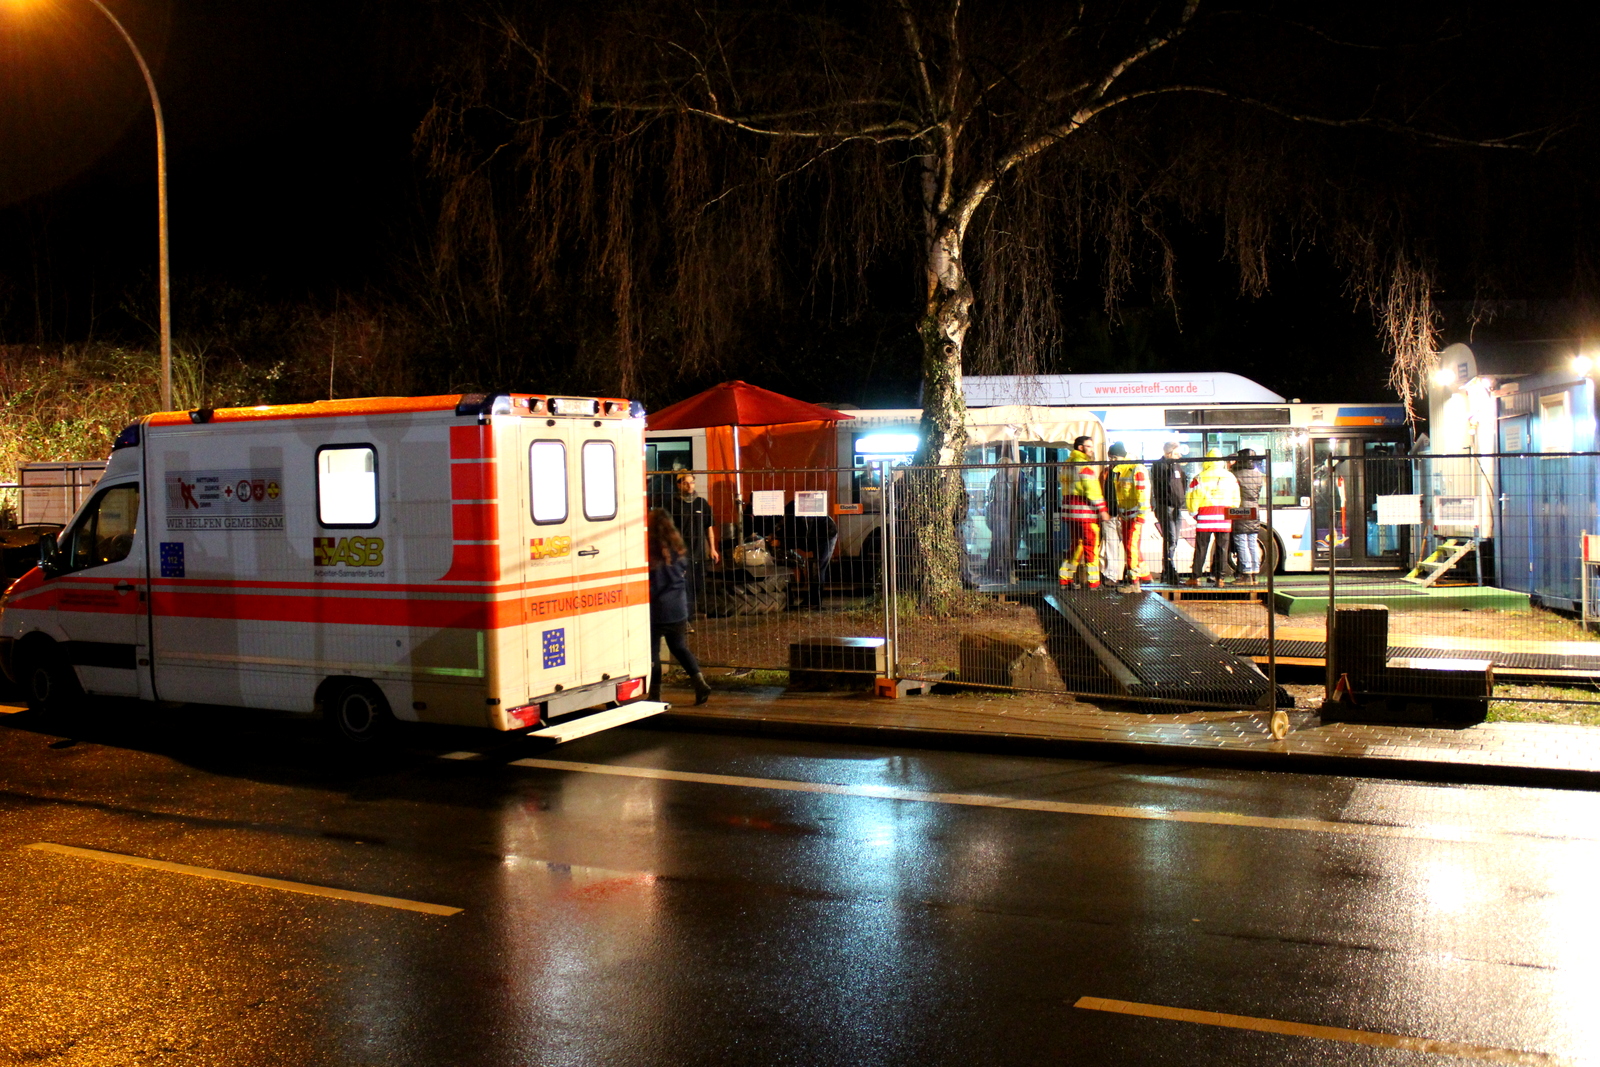 Erneute Kältehilfsaktion für Obdachlose in Saarbrücken